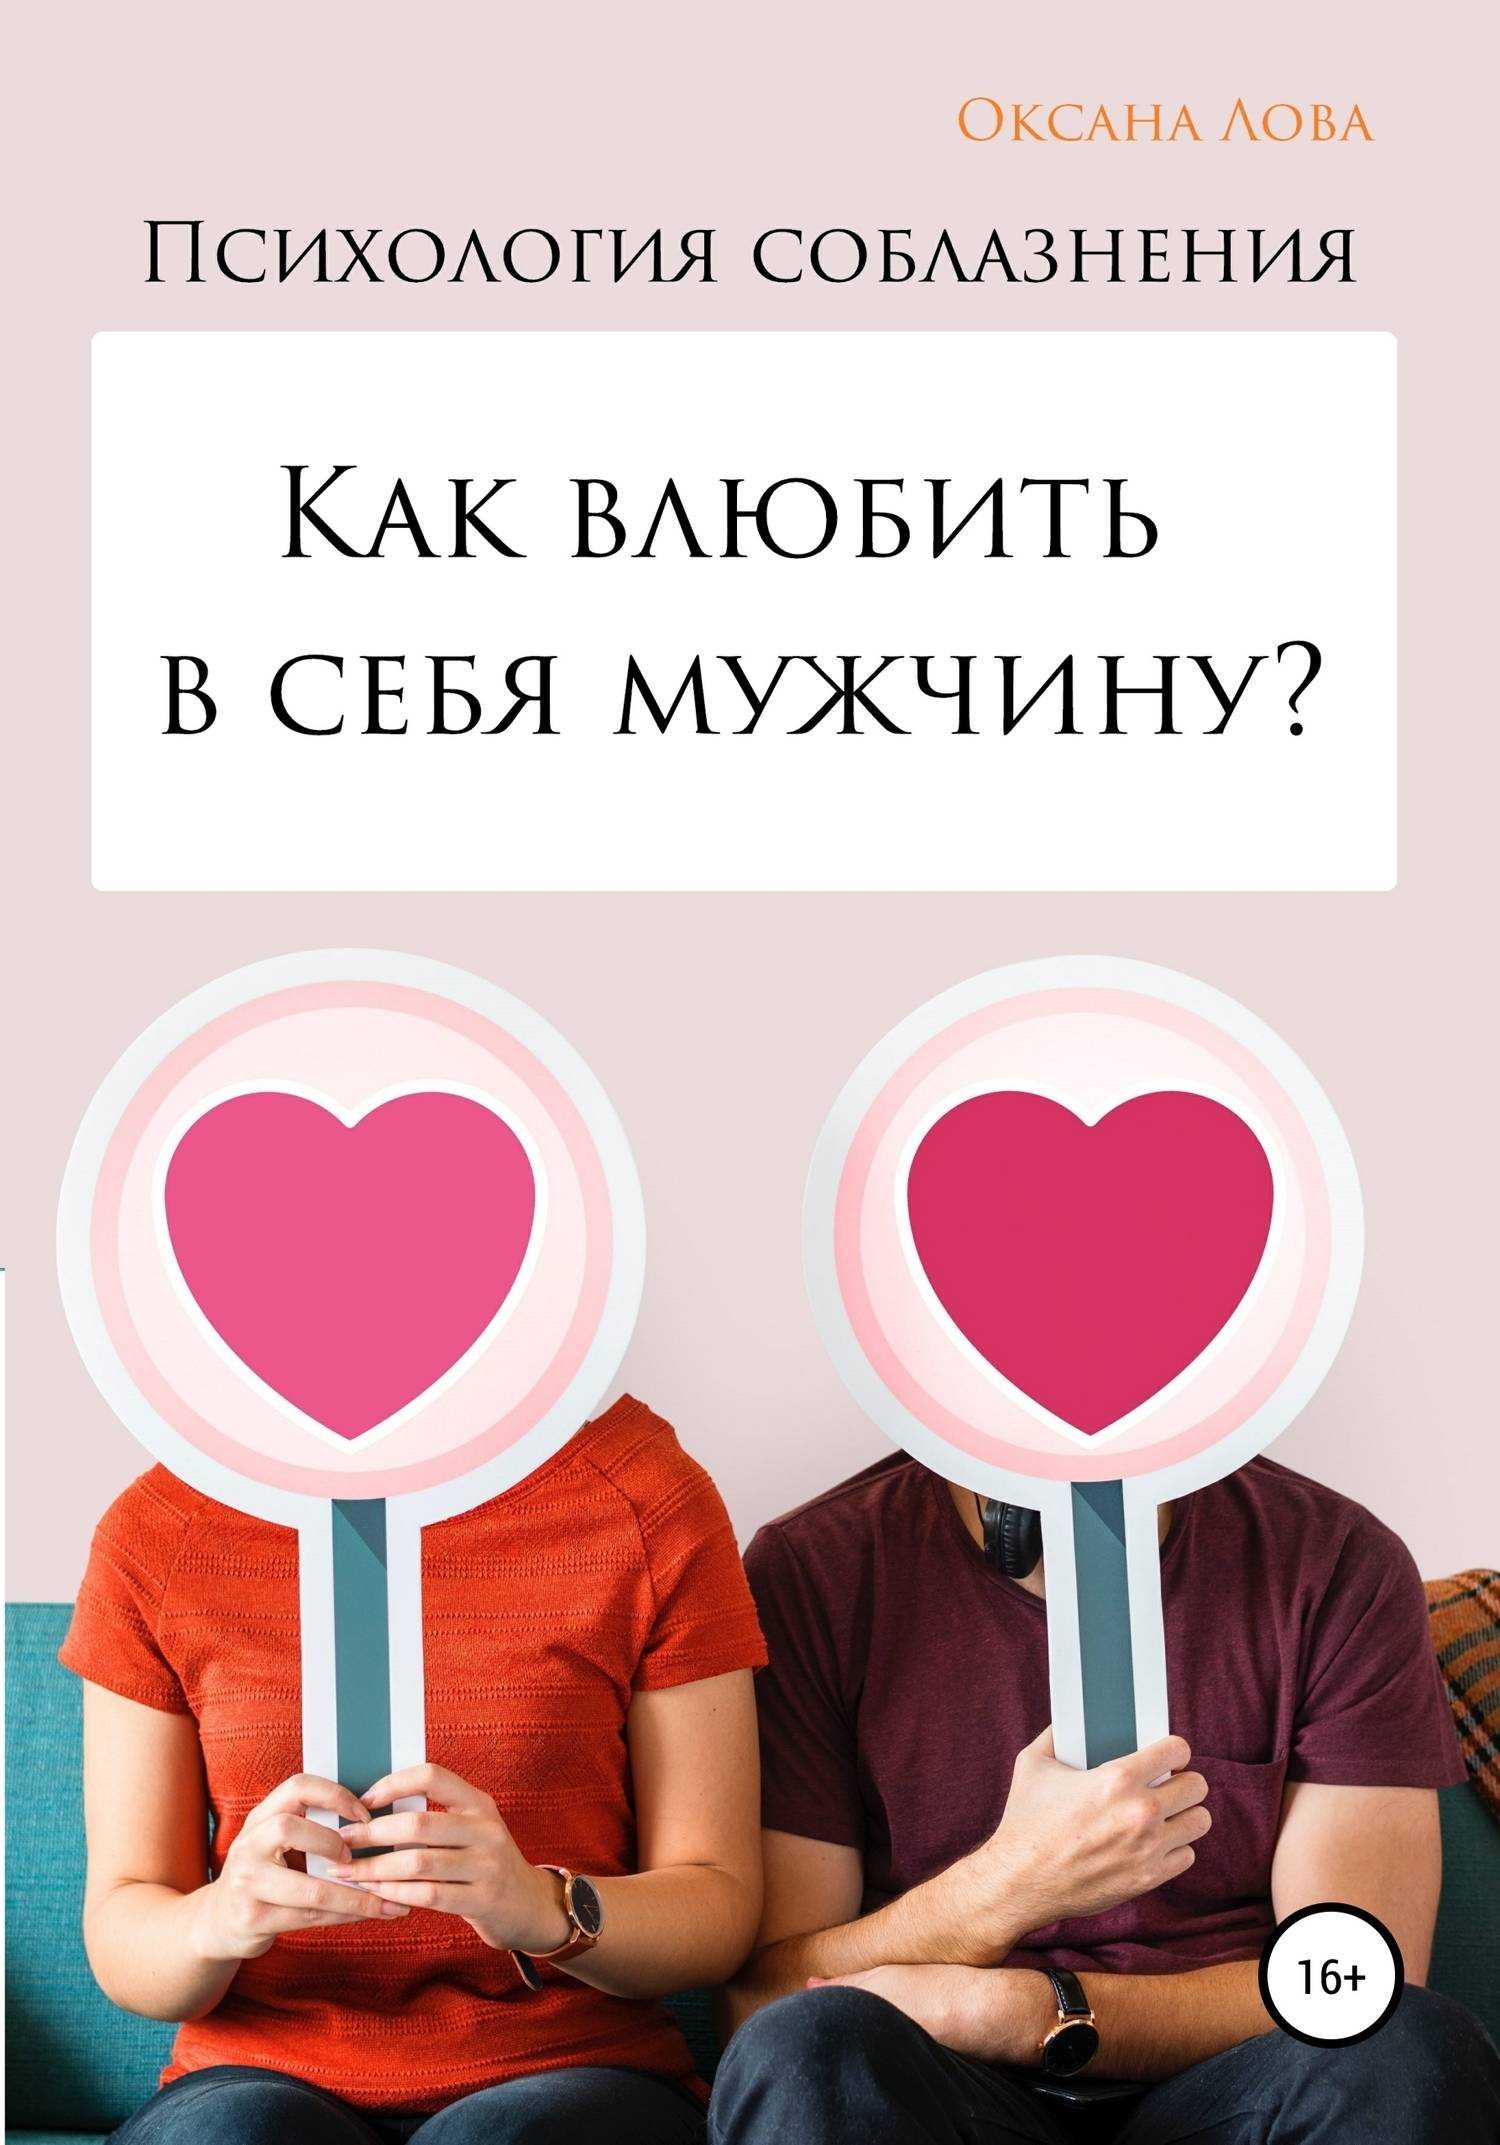 Любовная переписка: как очаровать в онлайн-общении - отношения - info.sibnet.ru